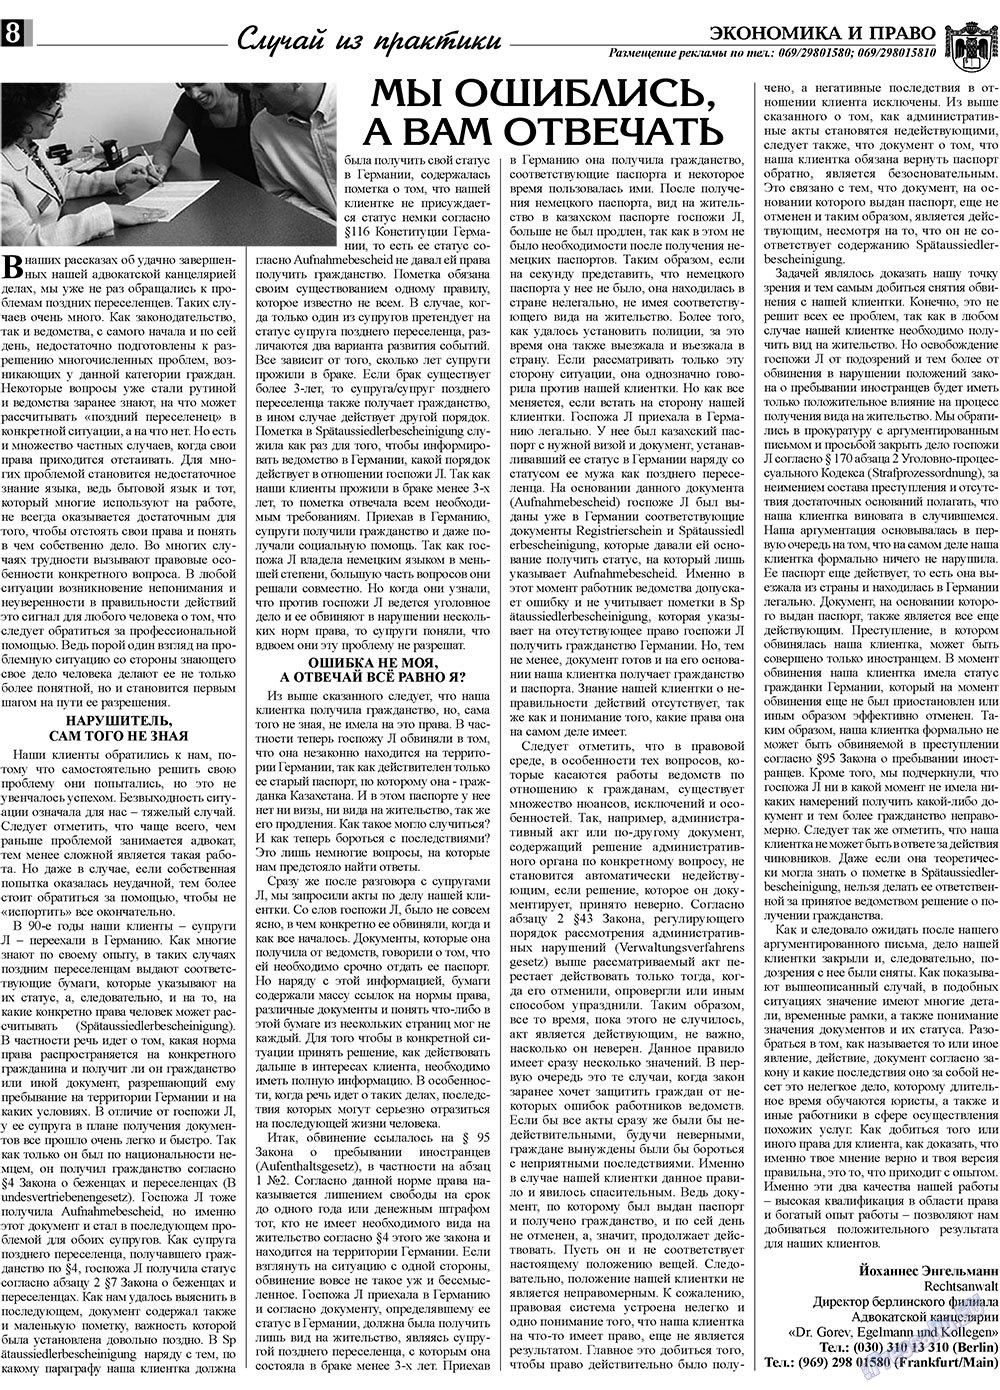 Экономика и право, газета. 2009 №4 стр.8